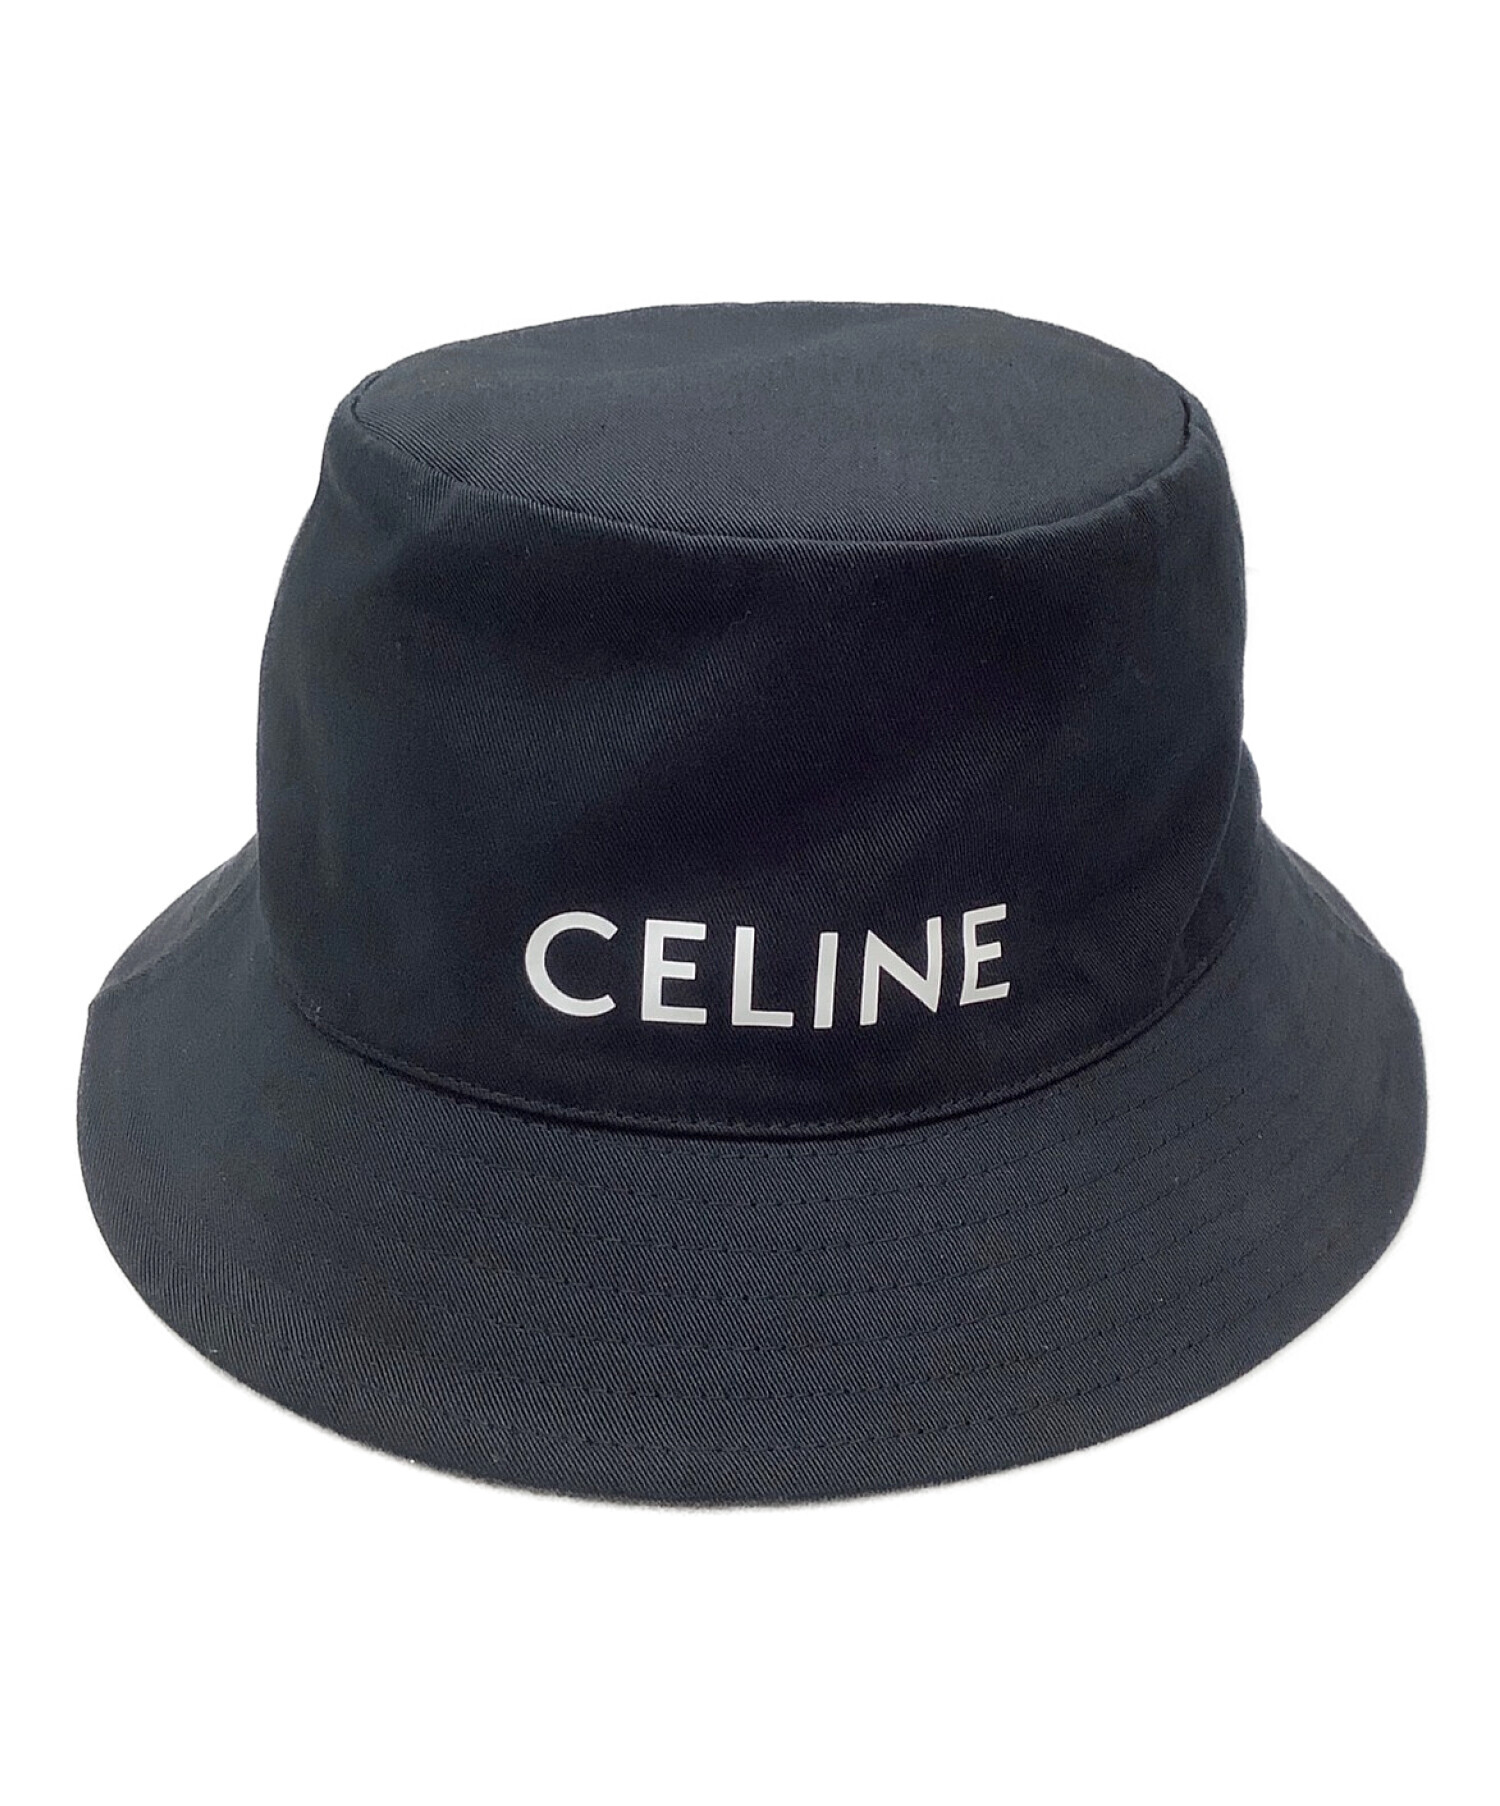 CELINE (セリーヌ) ハット ブラック サイズ:L